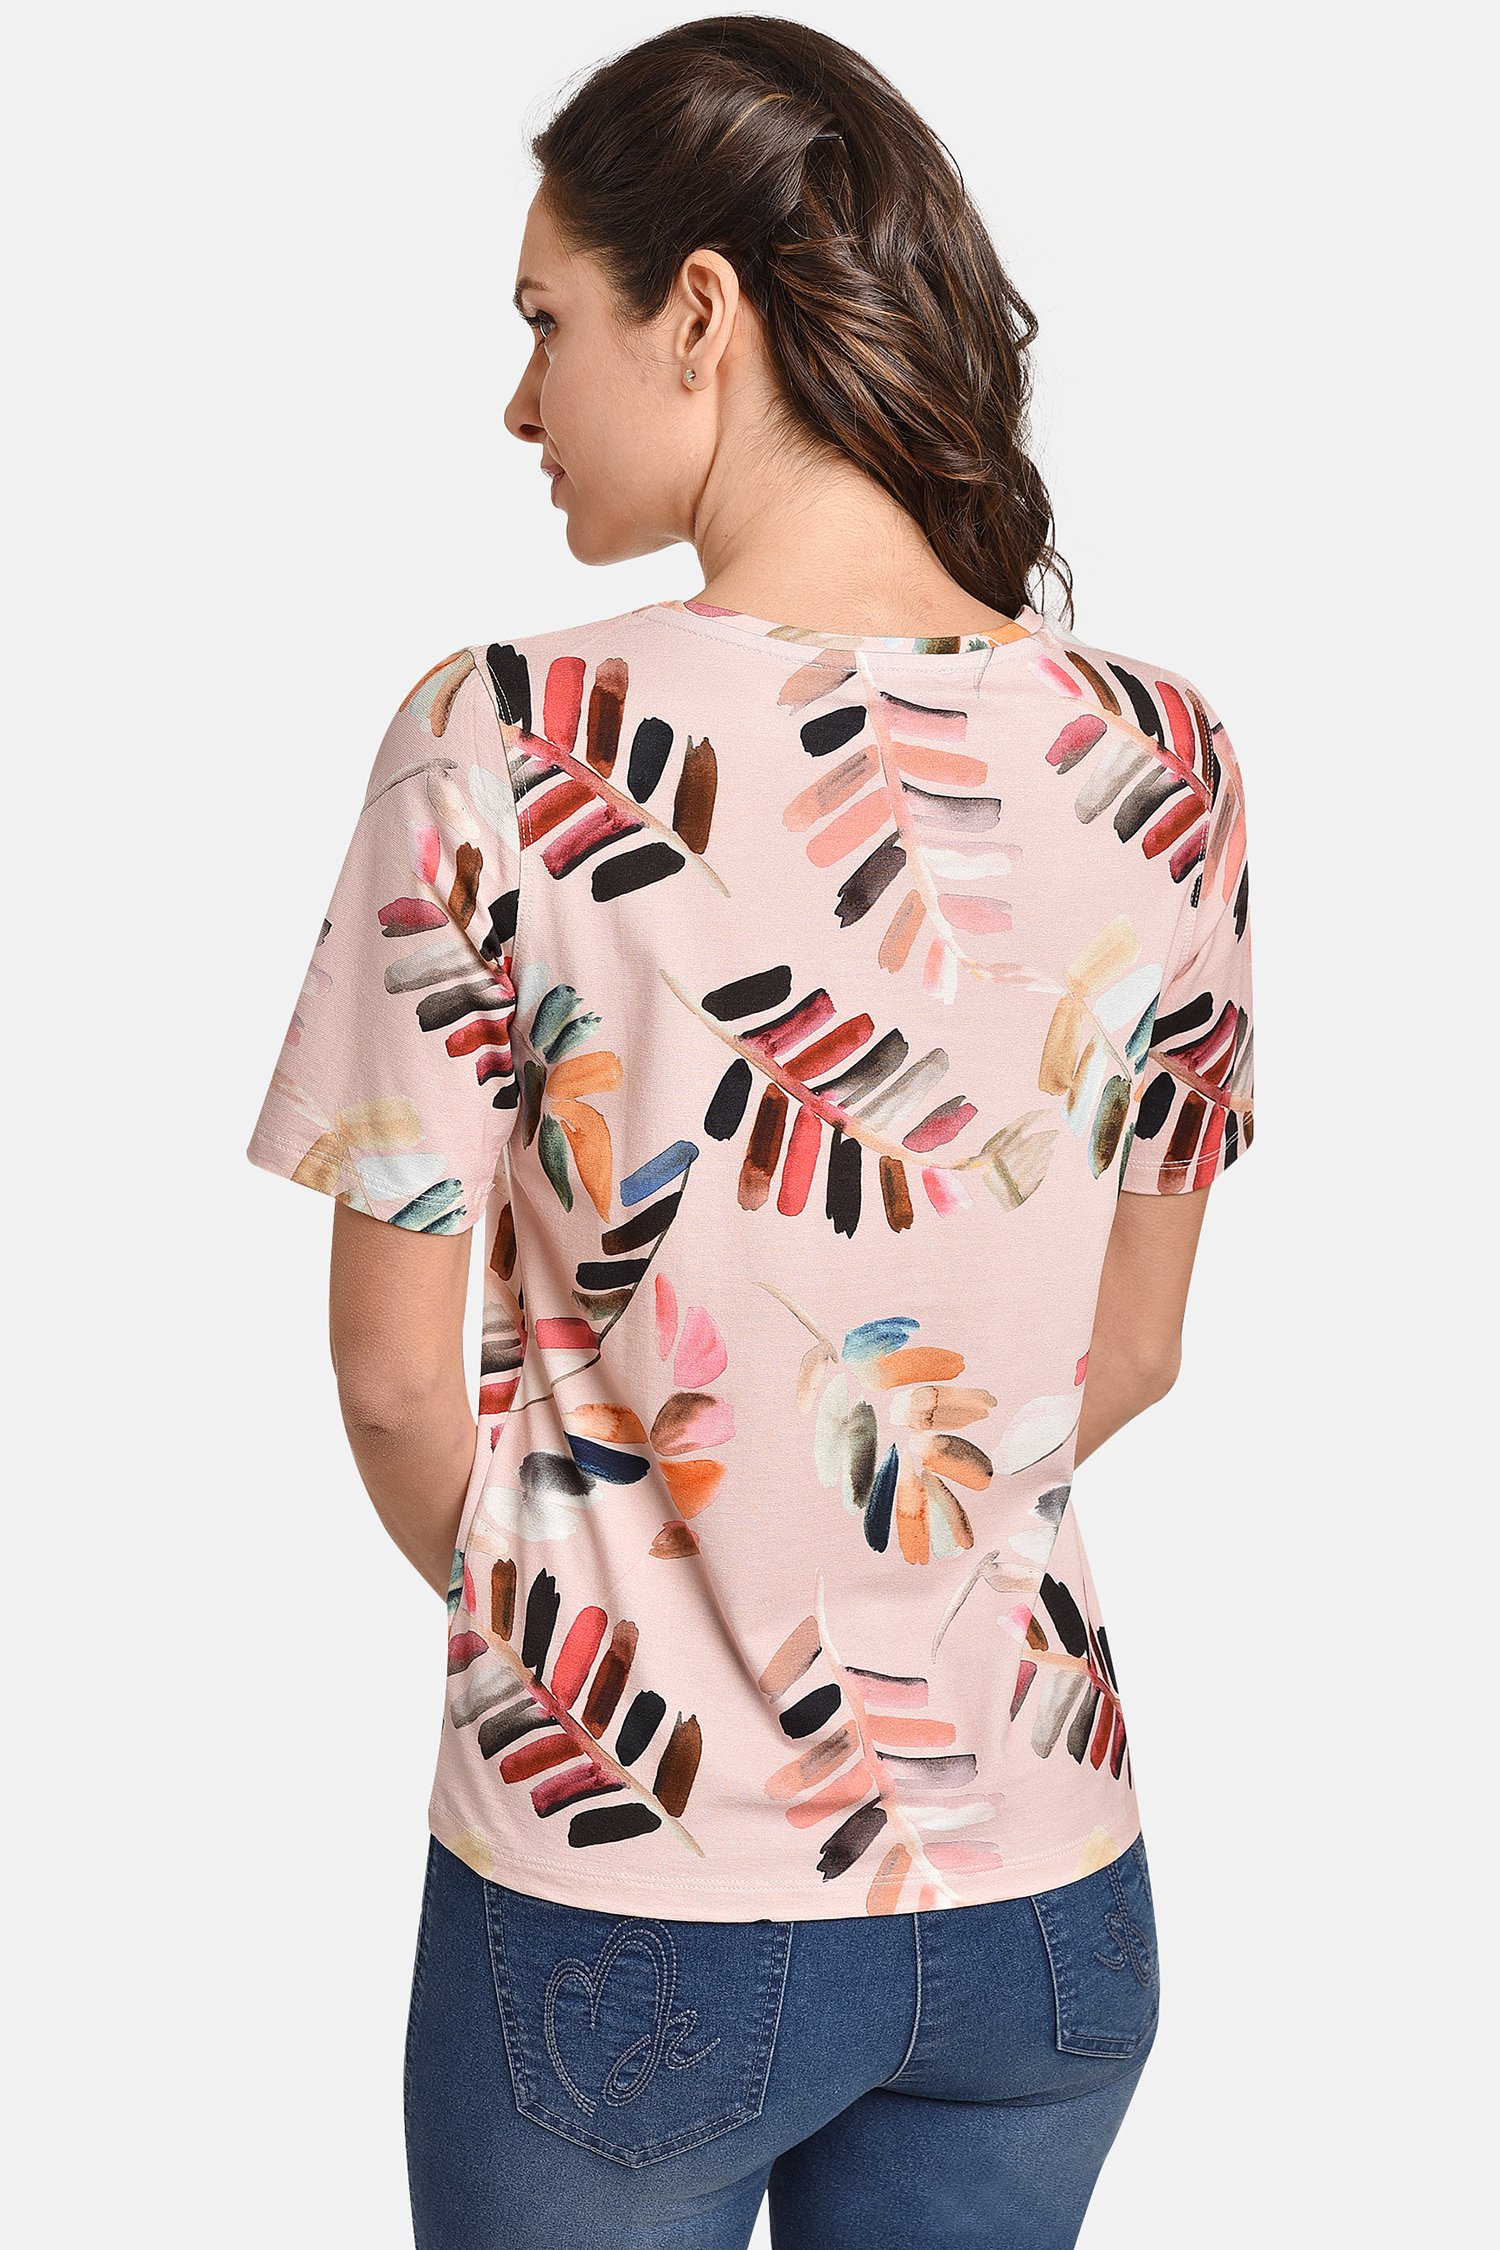 T-shirt rose avec impression de feuilles colorées de Bicalla pour Femmes